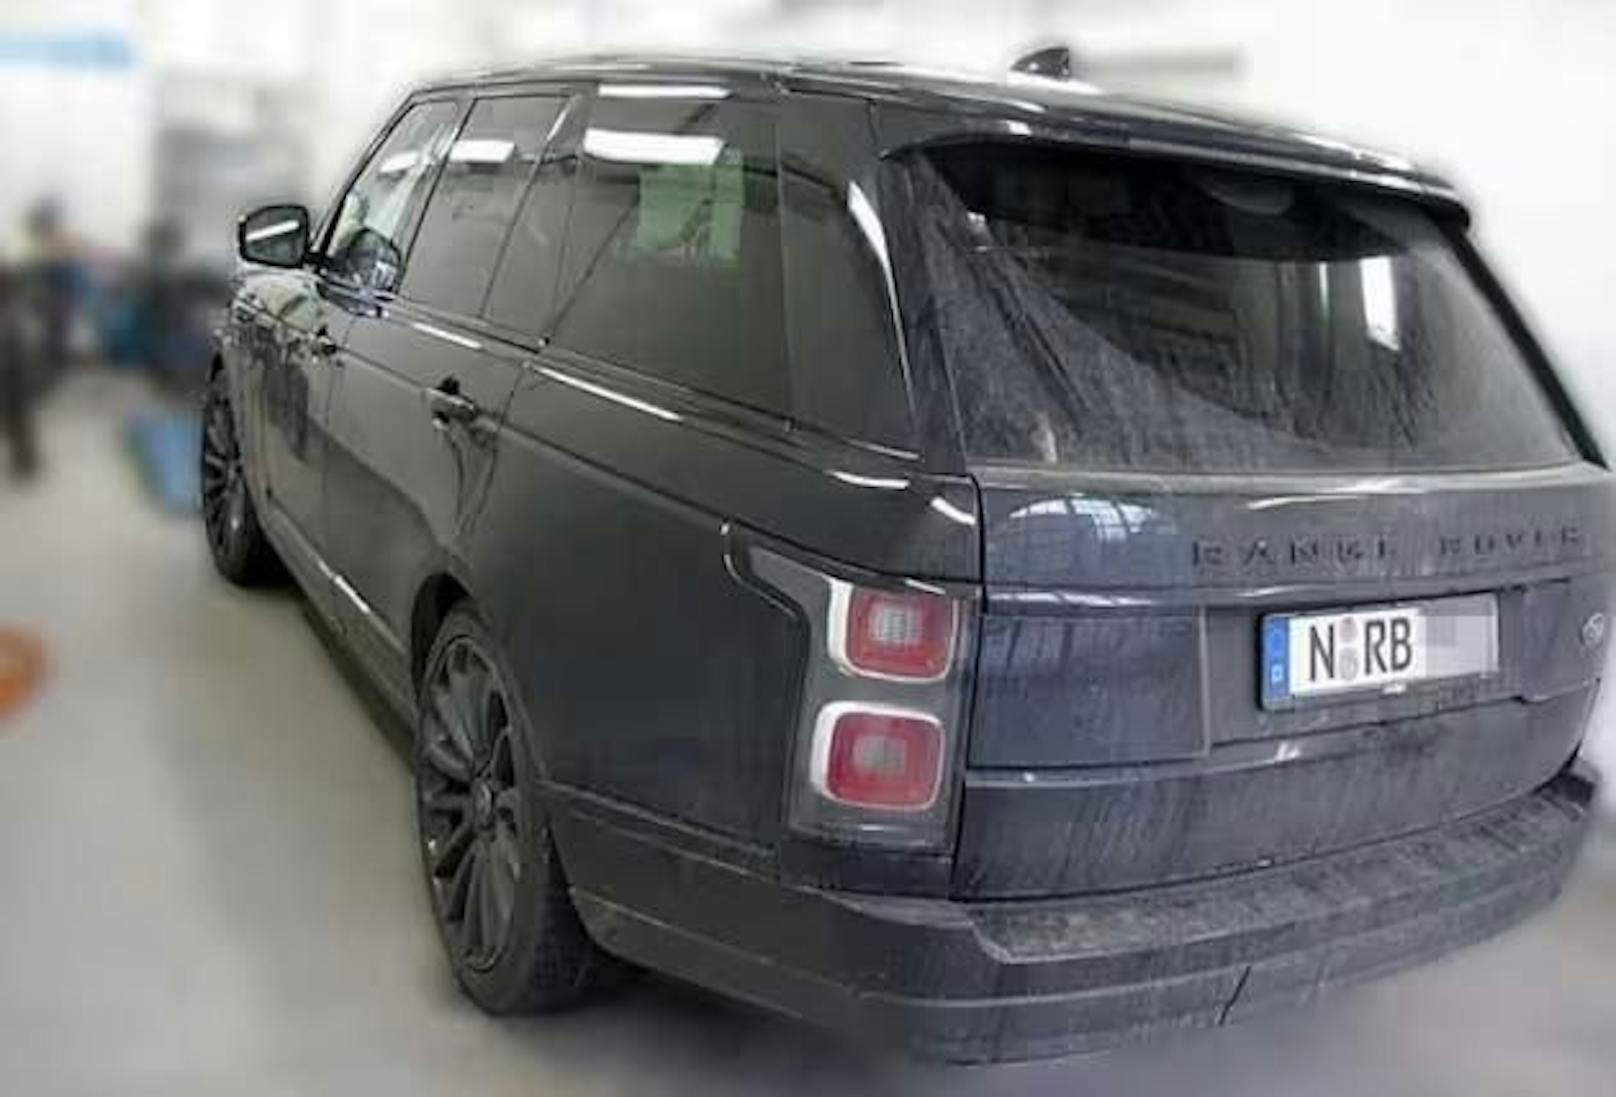 Das Auto hat ein Kennzeichen der Stadt Nürnberg und beginnt mit "N – RB …". Laut Recherchen der deutschen "Bild" gehört der Range Rover ihrem Ex-Partner, der nun ins Visier der Polizei geraten ist.